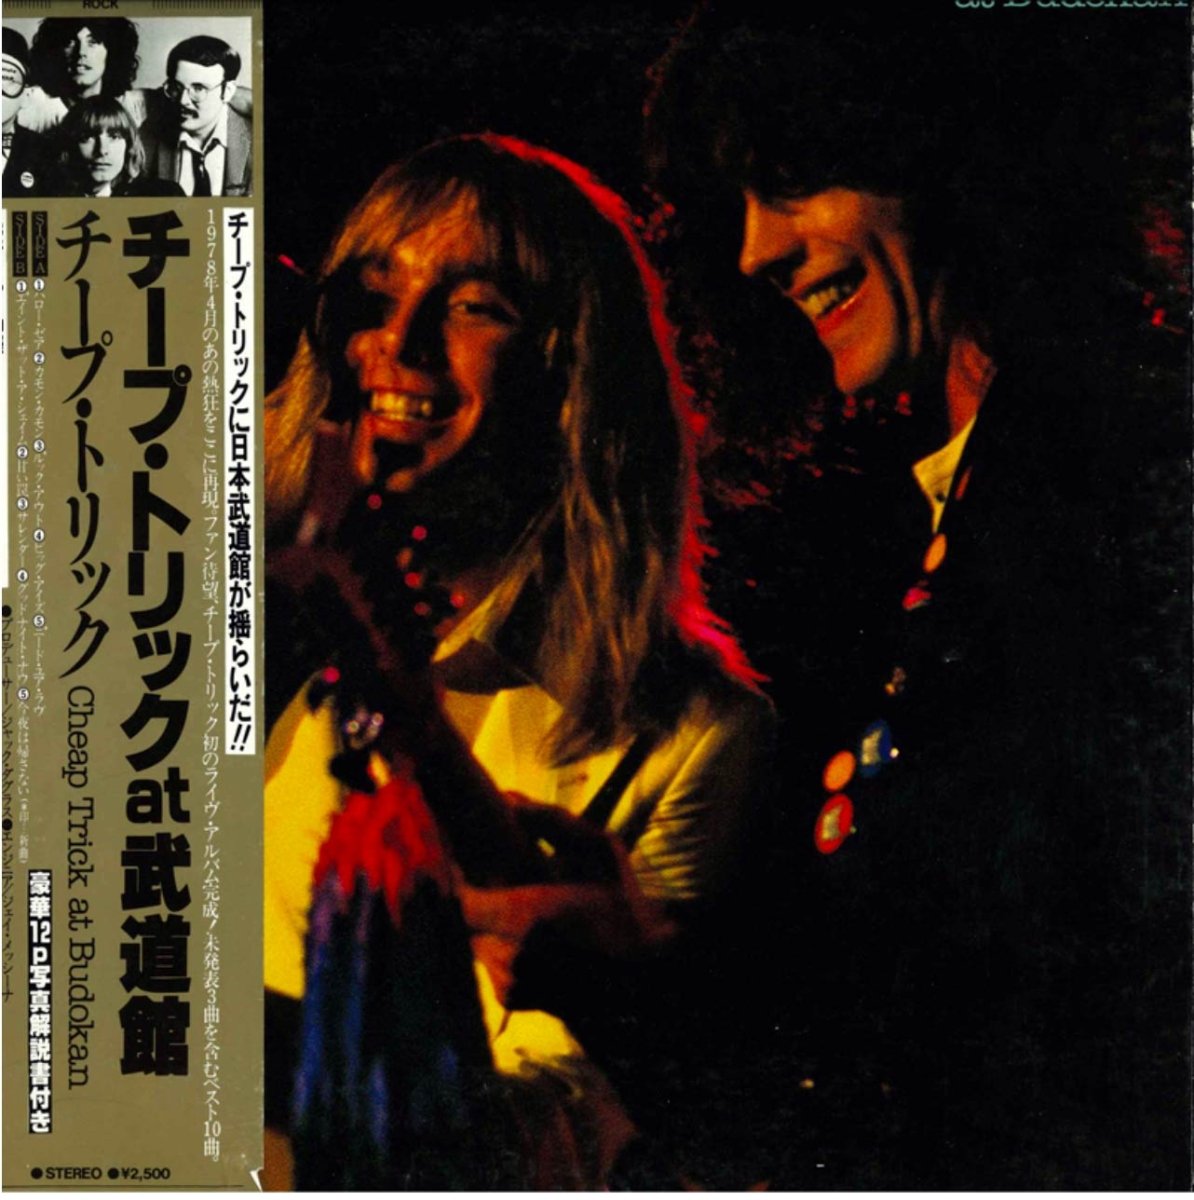 Doobie Brothers - Minute By Minute - Japanese Vintage Vinyl Cheap Trick - At Budokan- Japanese Vintage Vinyl 